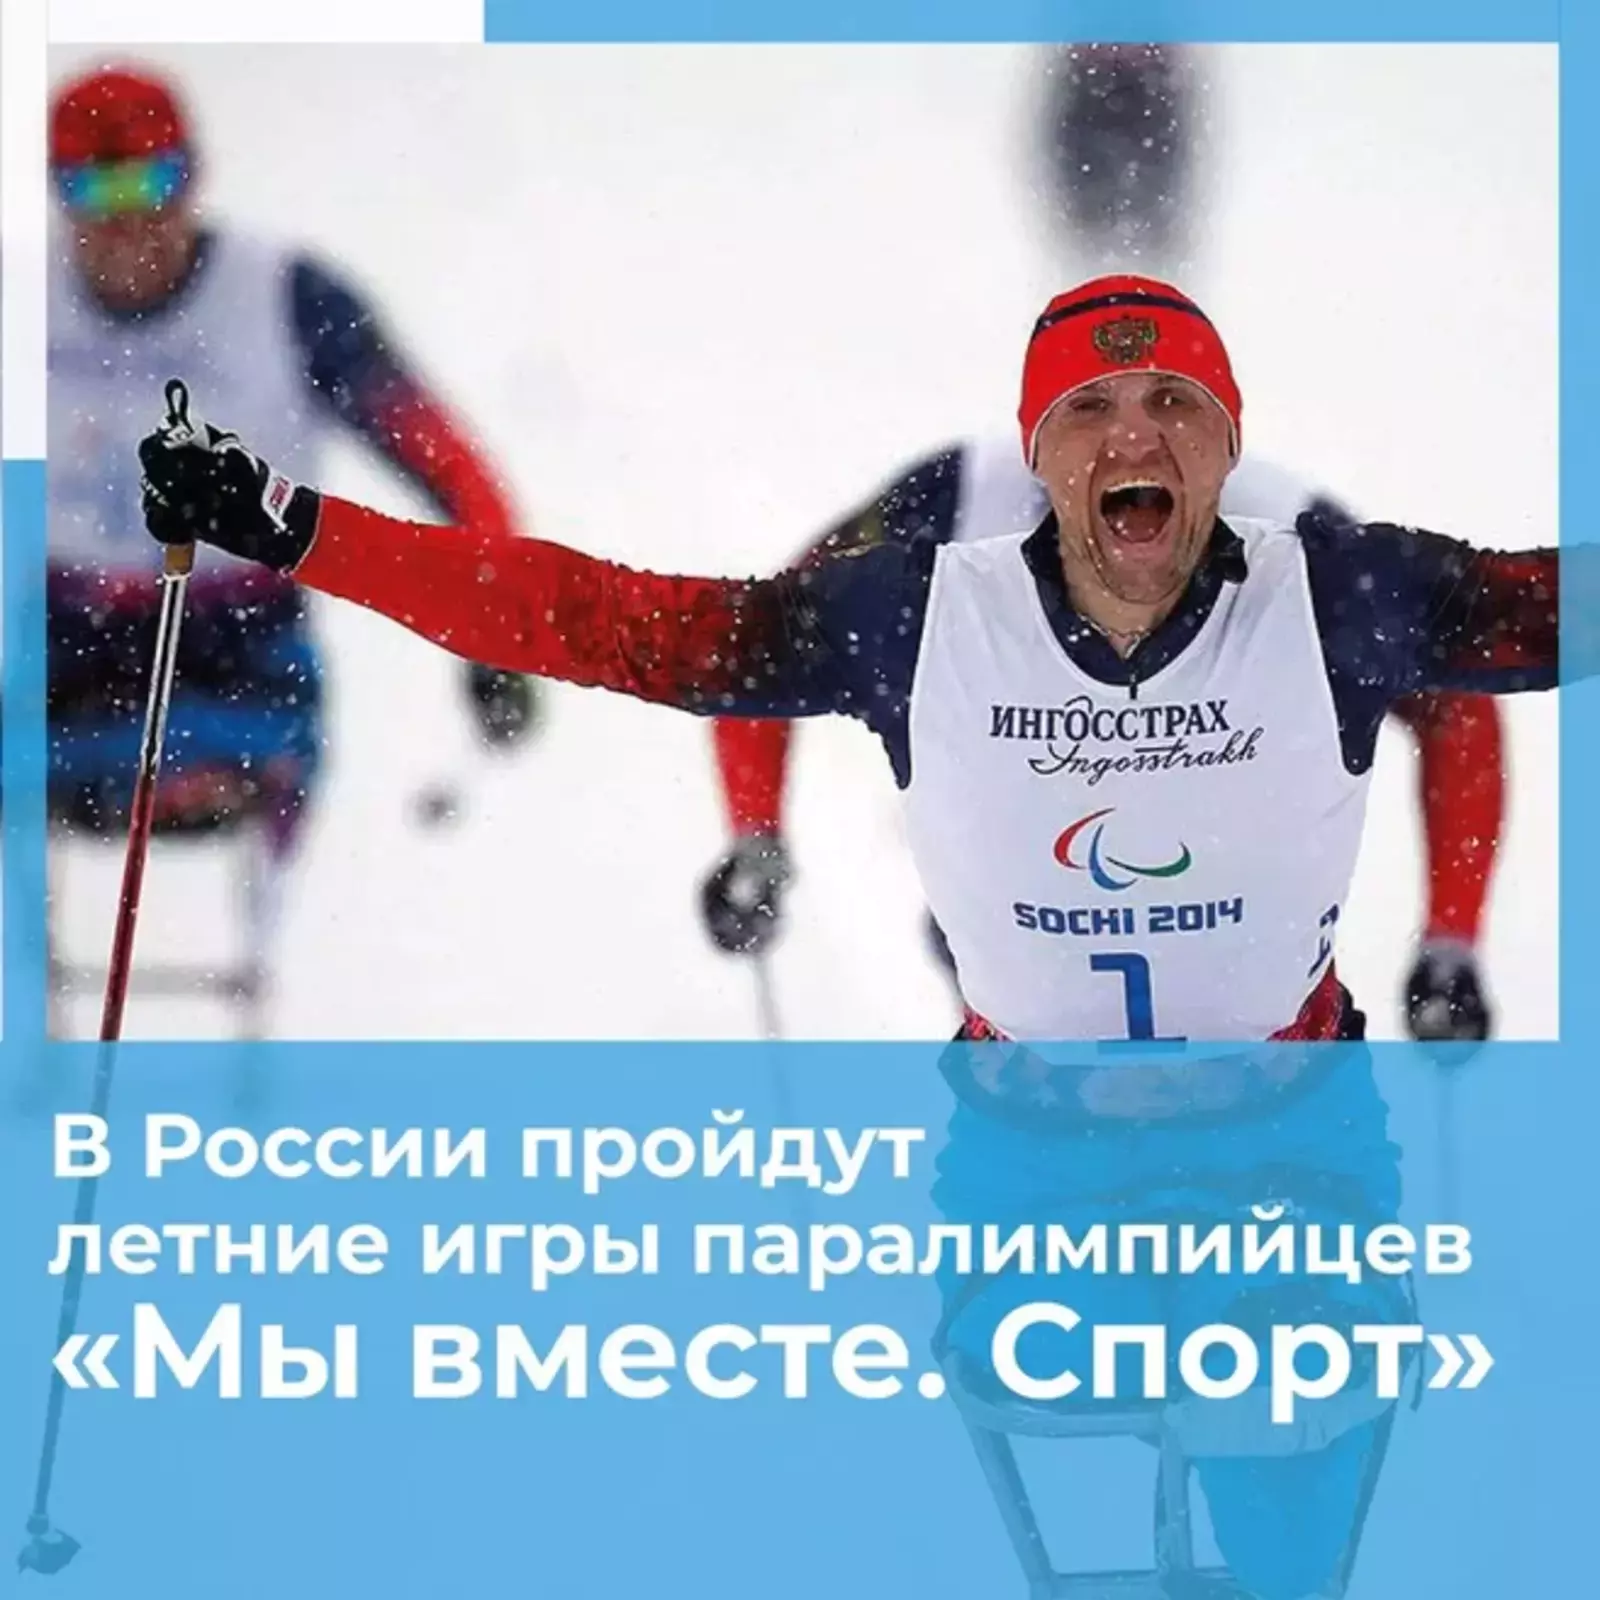 В летней паралимпиаде в Сочи примут участие 44 спортсмена из Башкирии